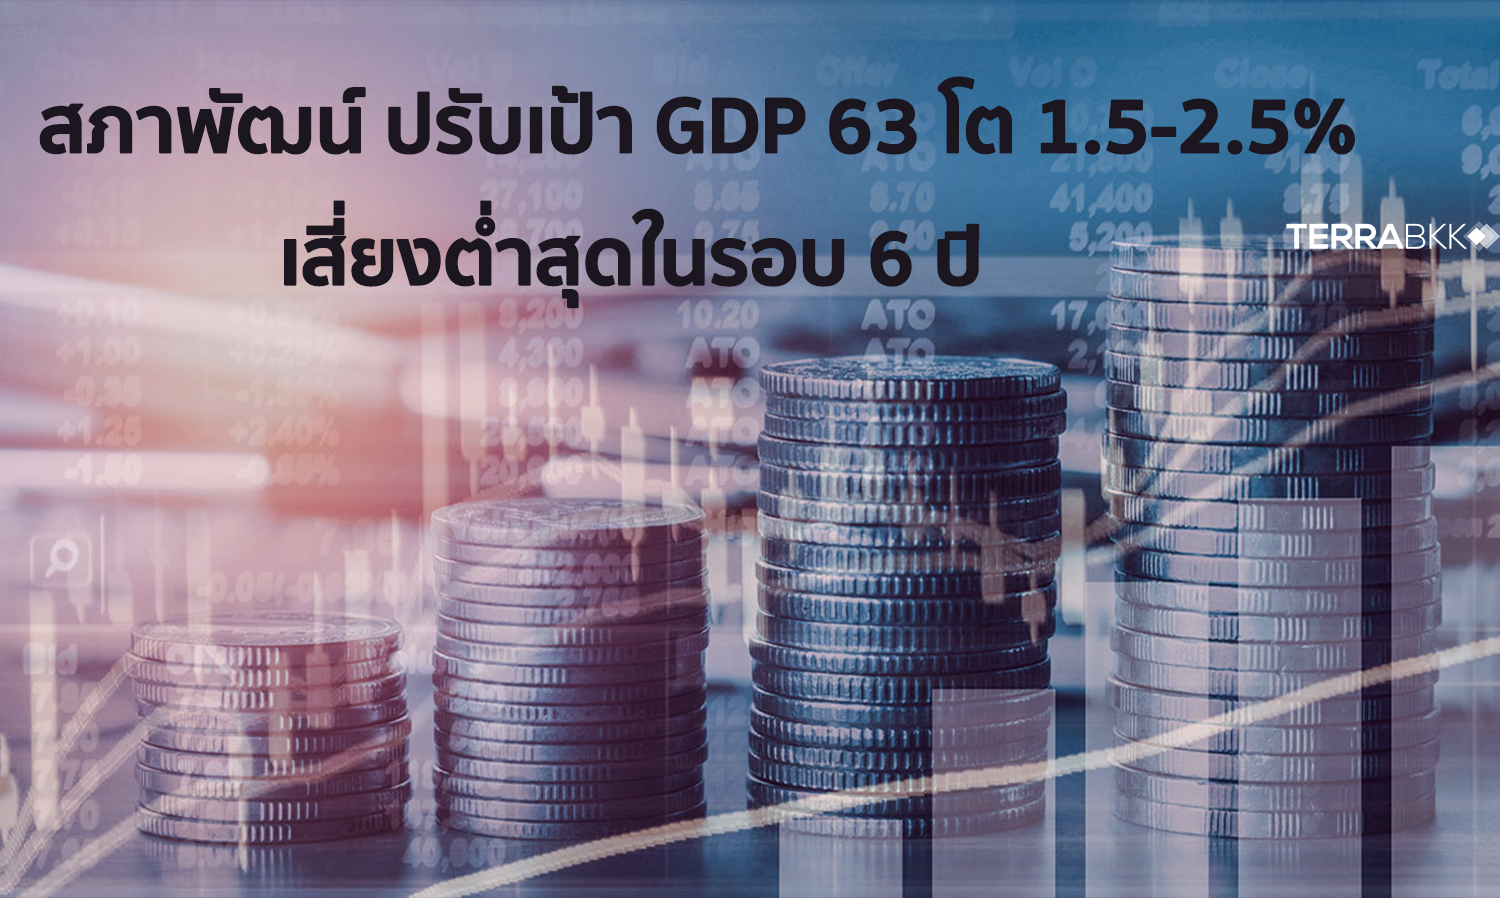 สภาพัฒน์ ปรับเป้า GDP 63 โต 1.5-2.5% เสี่ยงต่ำสุดในรอบ 6 ปี